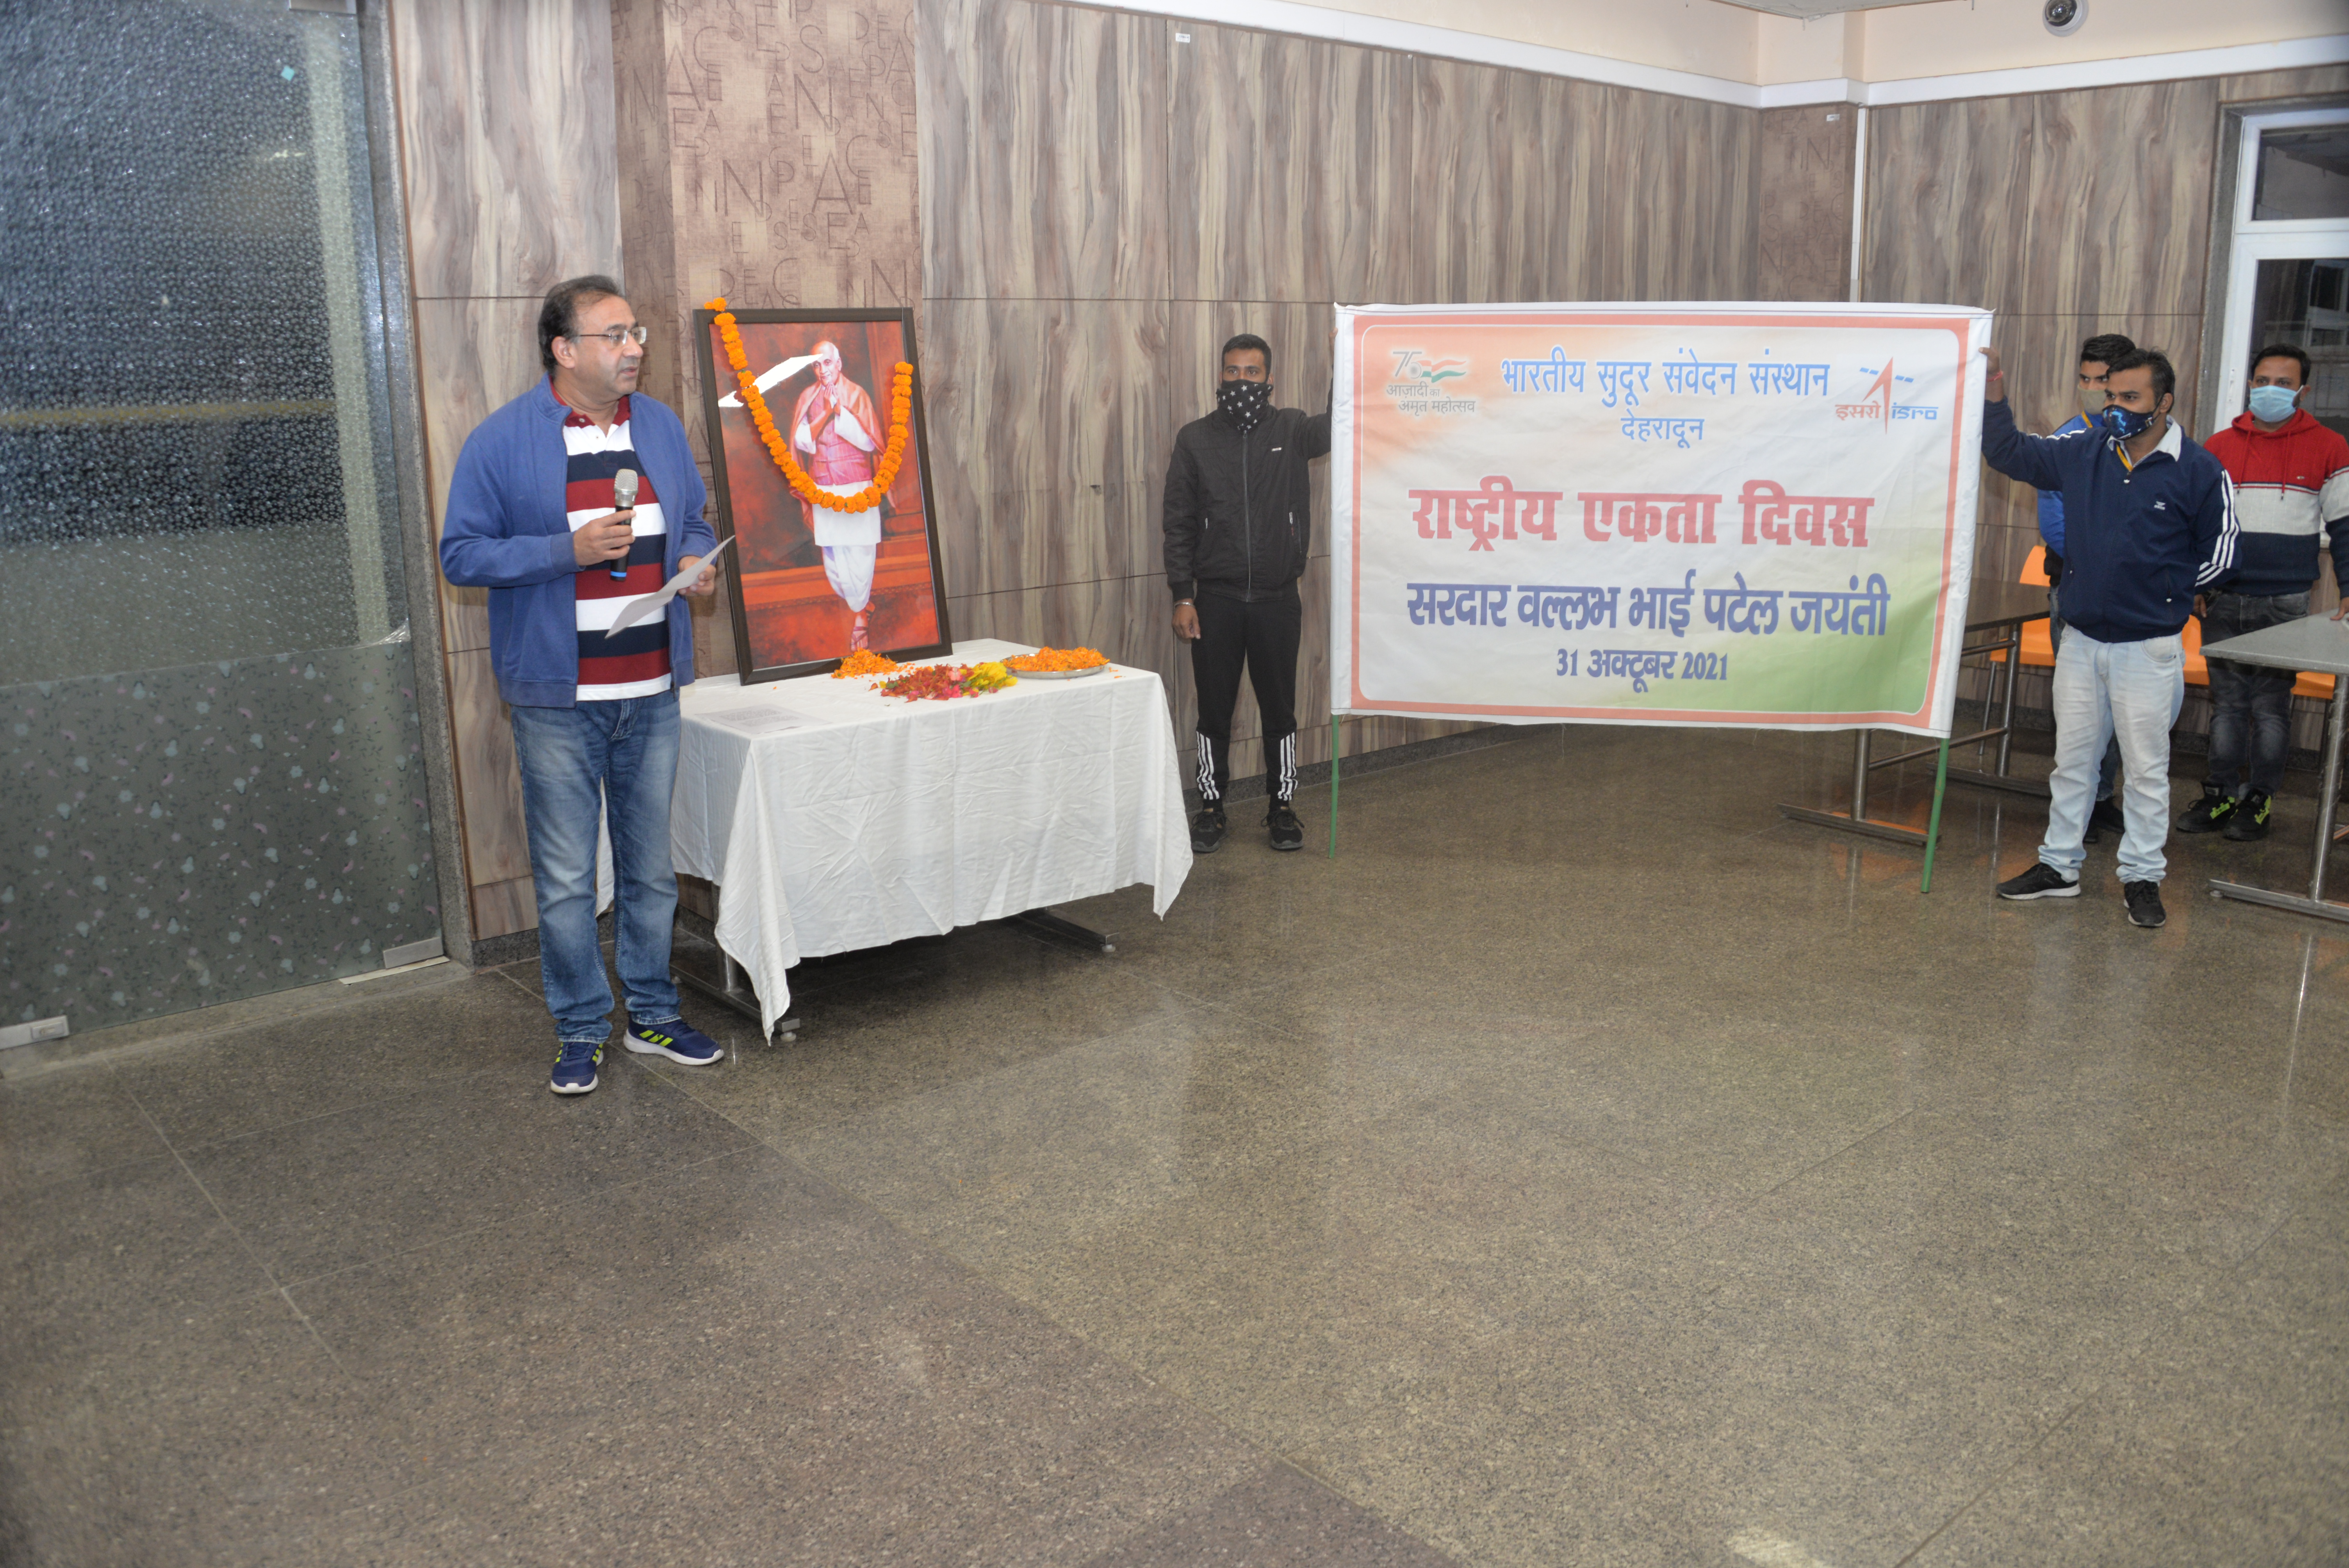 Image of National Unity Day Celebration at IIRS : Sadbhavna Pledge